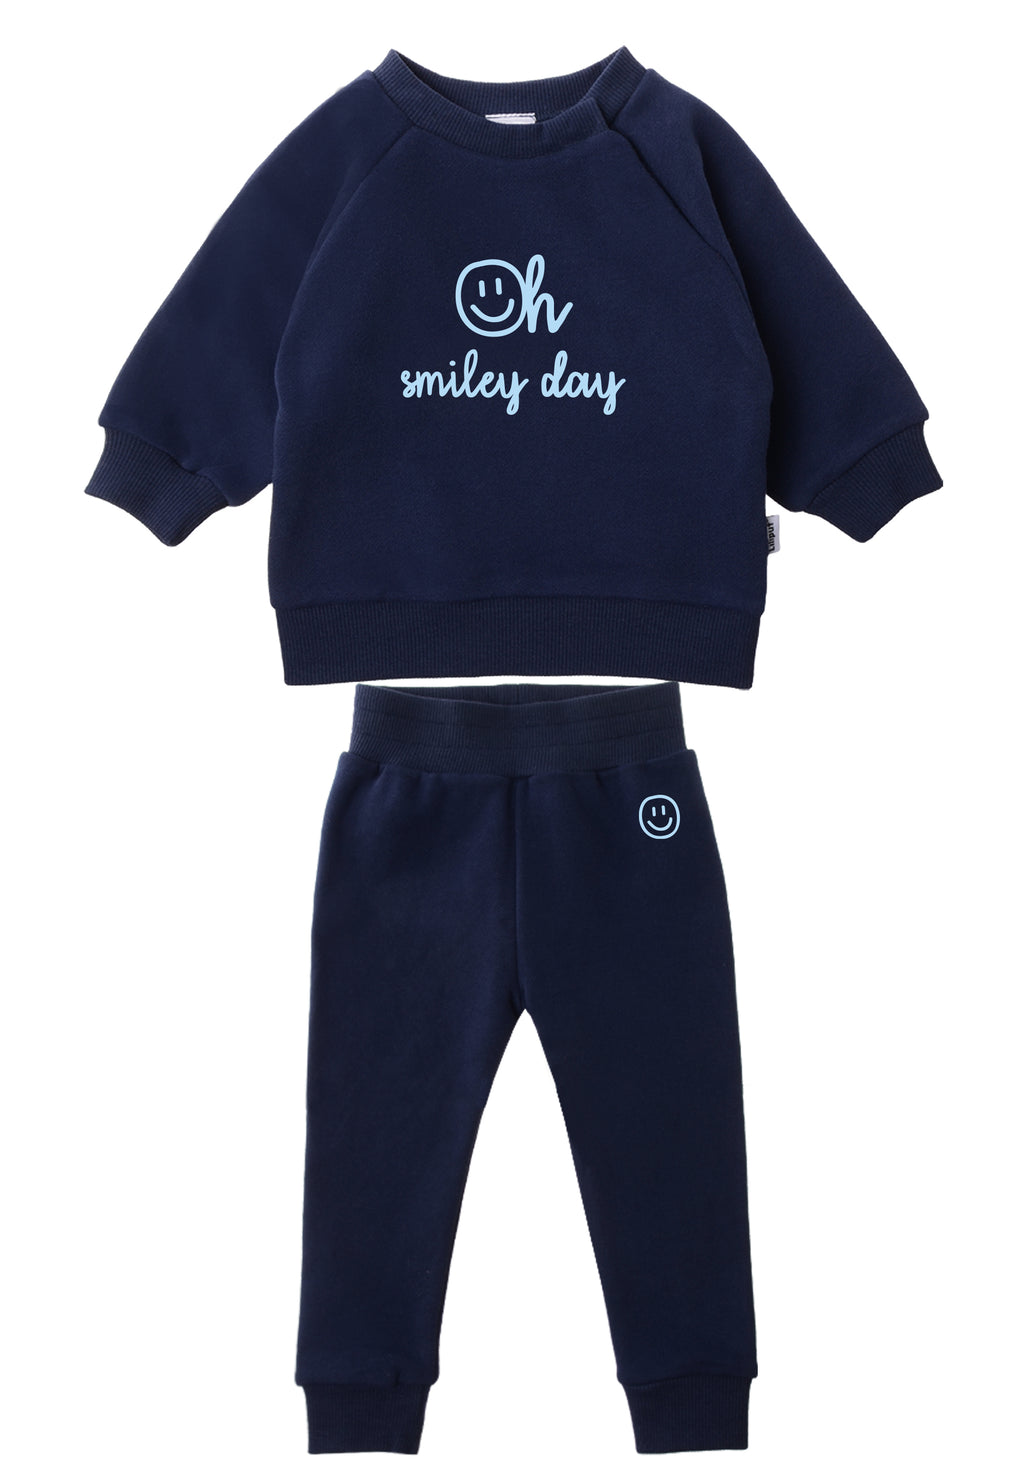 Outfitkombi mit Sweatshirt und Jogginghose in dunkelblau mit coolen Smiley Aufdrucken.